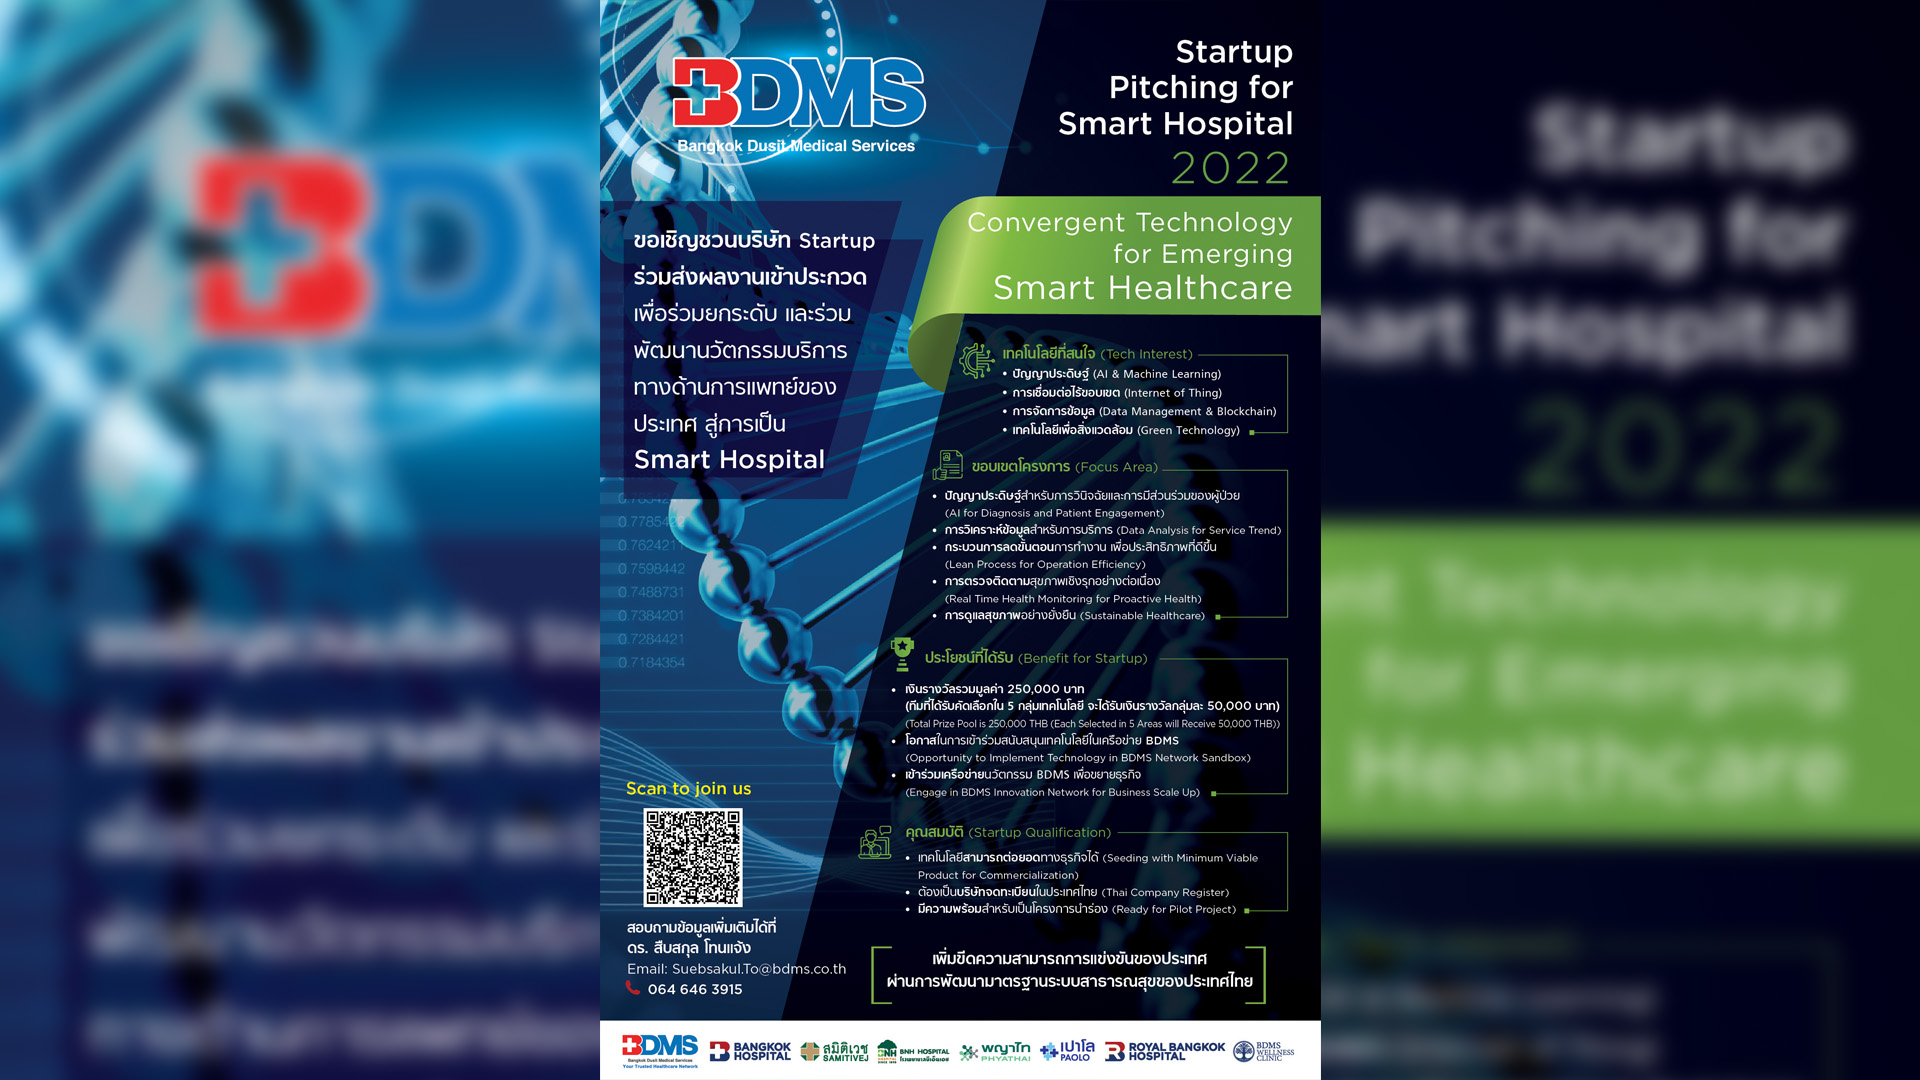 BDMS ชวน Startup รุ่นใหม่ ประชันผลงานใน “Startup Pitching For Smart Hospital 2022” เพื่อชิงเงินรางวัลรวม 250,000 บาท